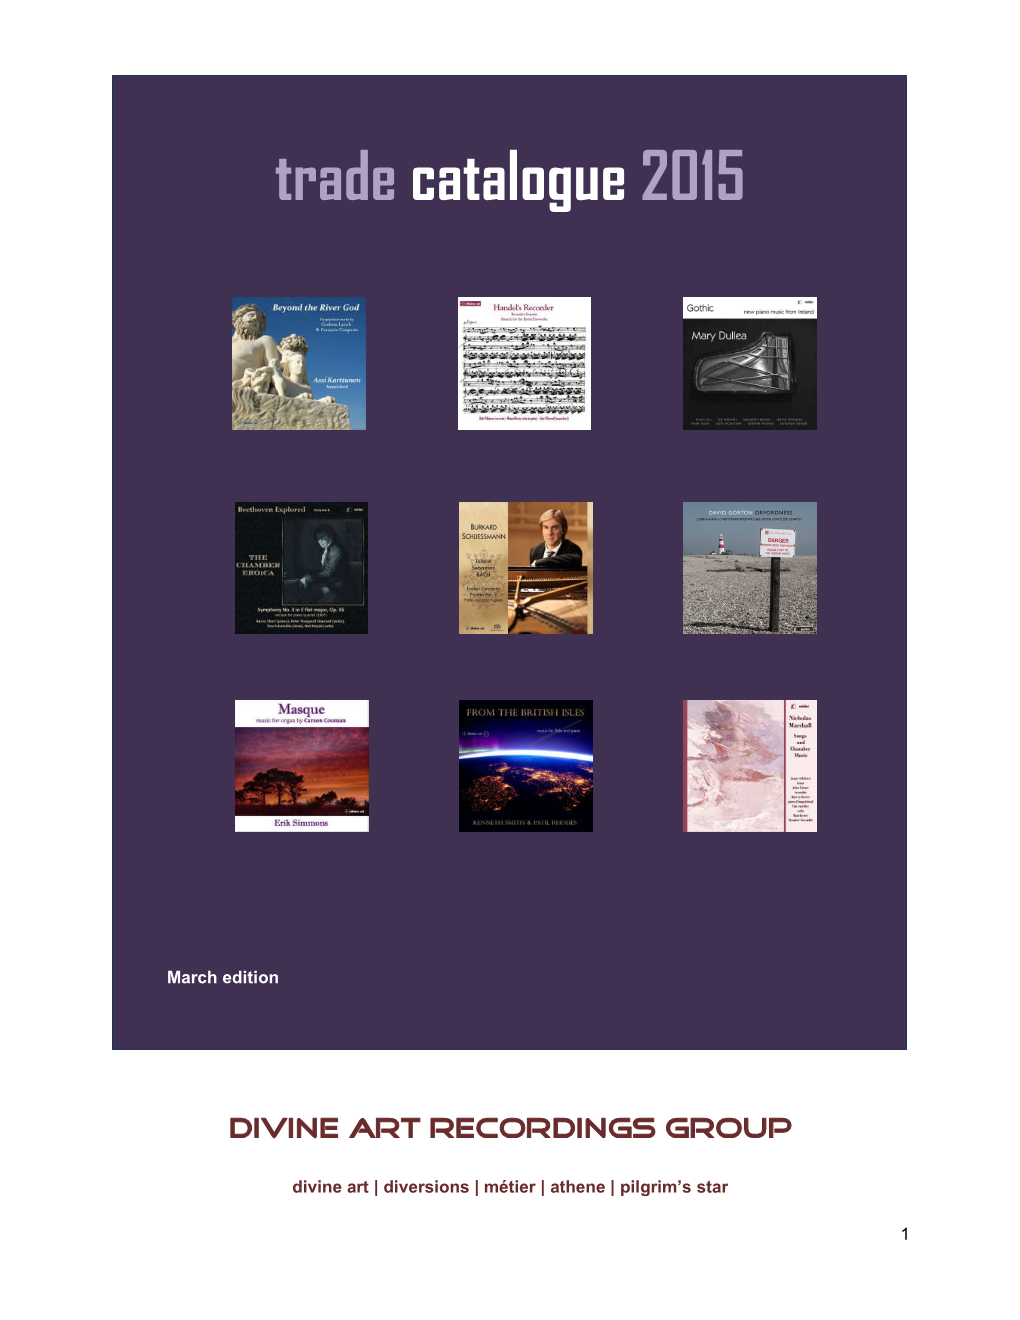 Divine Art Recordings Group Reviews Portfolio